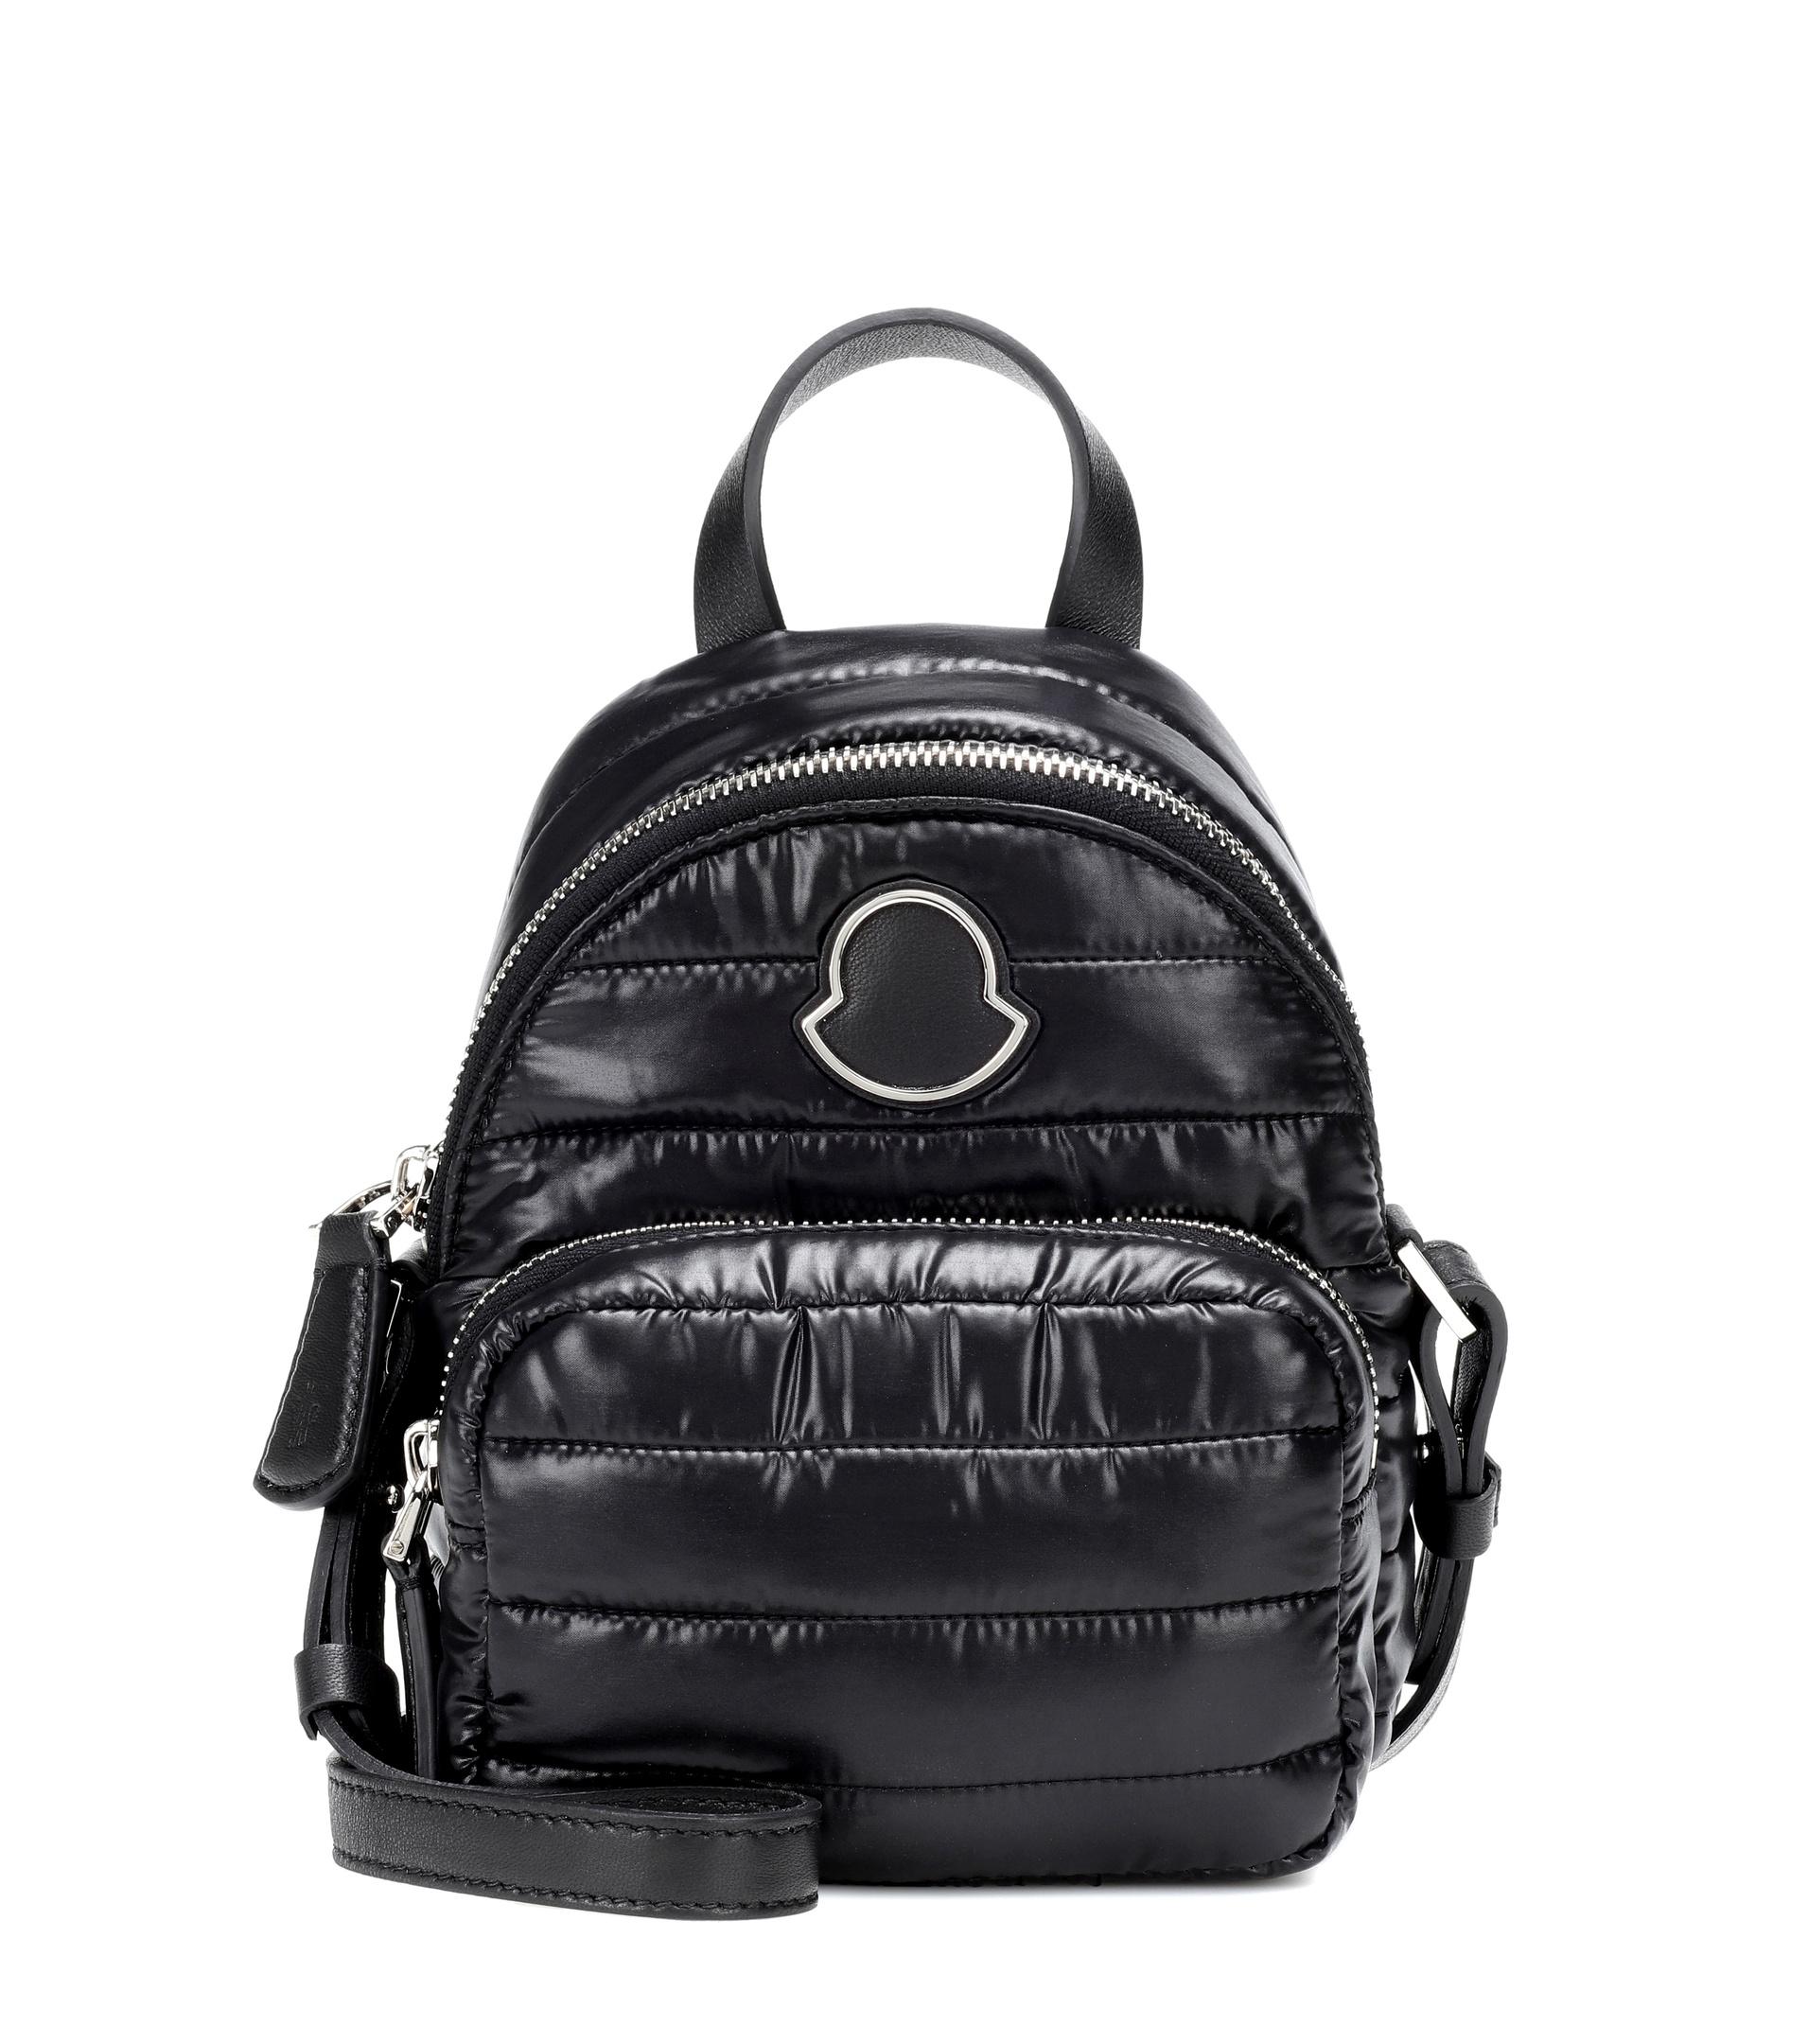 Moncler Leather Kilia Small Shoulder Bag in Black - Save 26% - Lyst